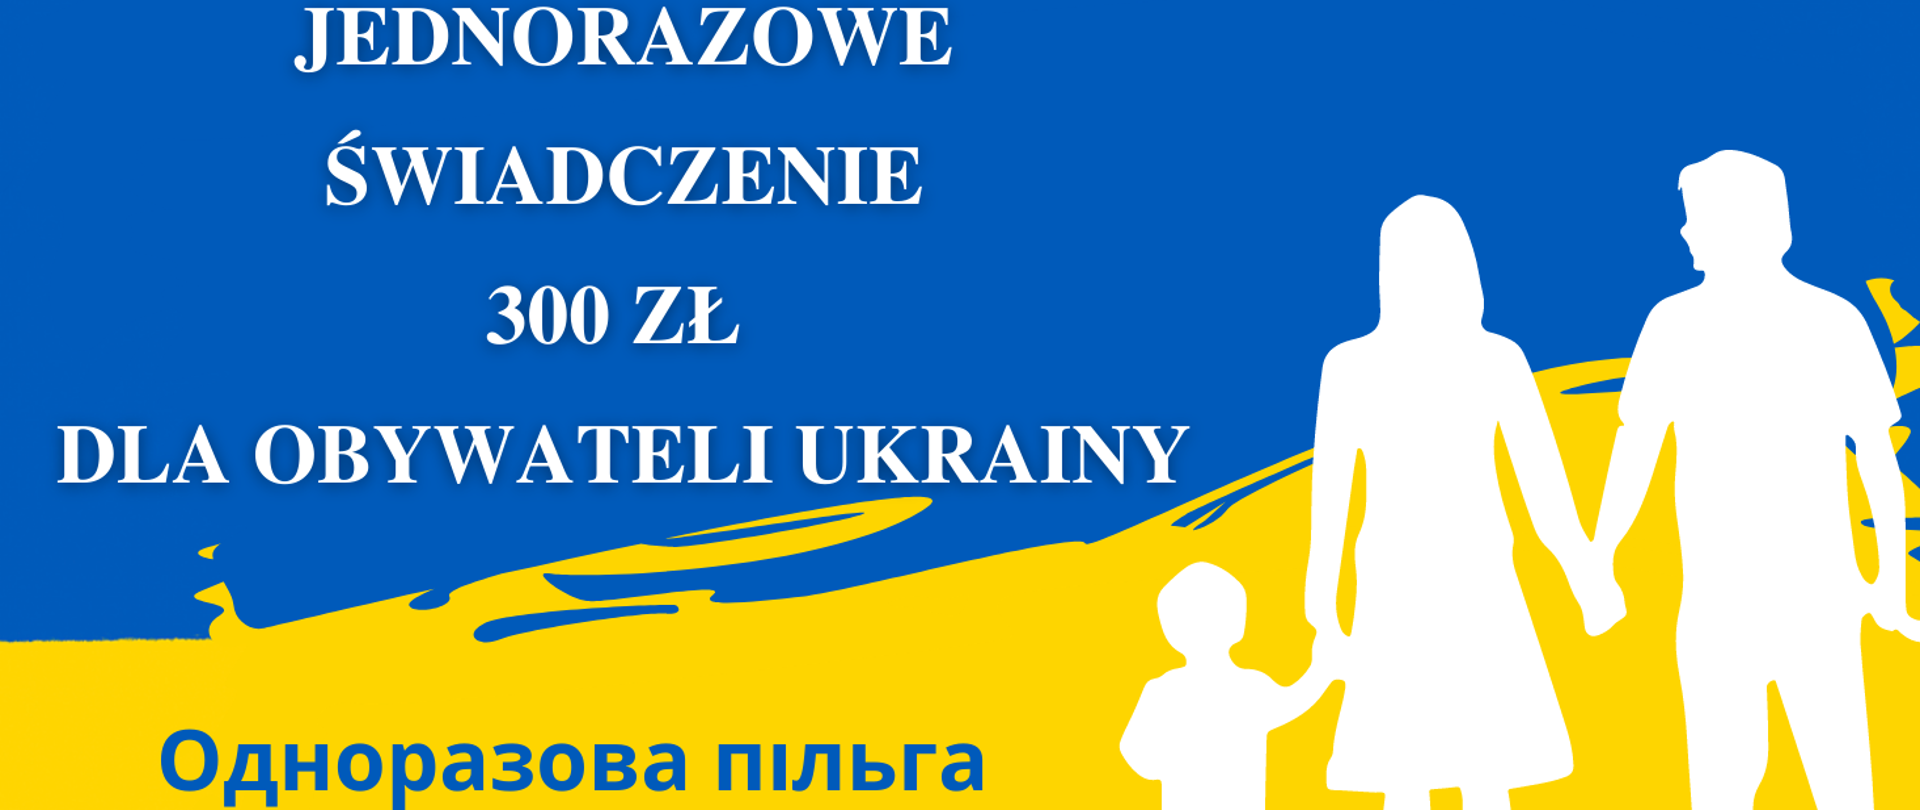 Barwy żółto niebieskie. Napis jednorazowe świadczenie 300 zł dla obywateli Ukrainy